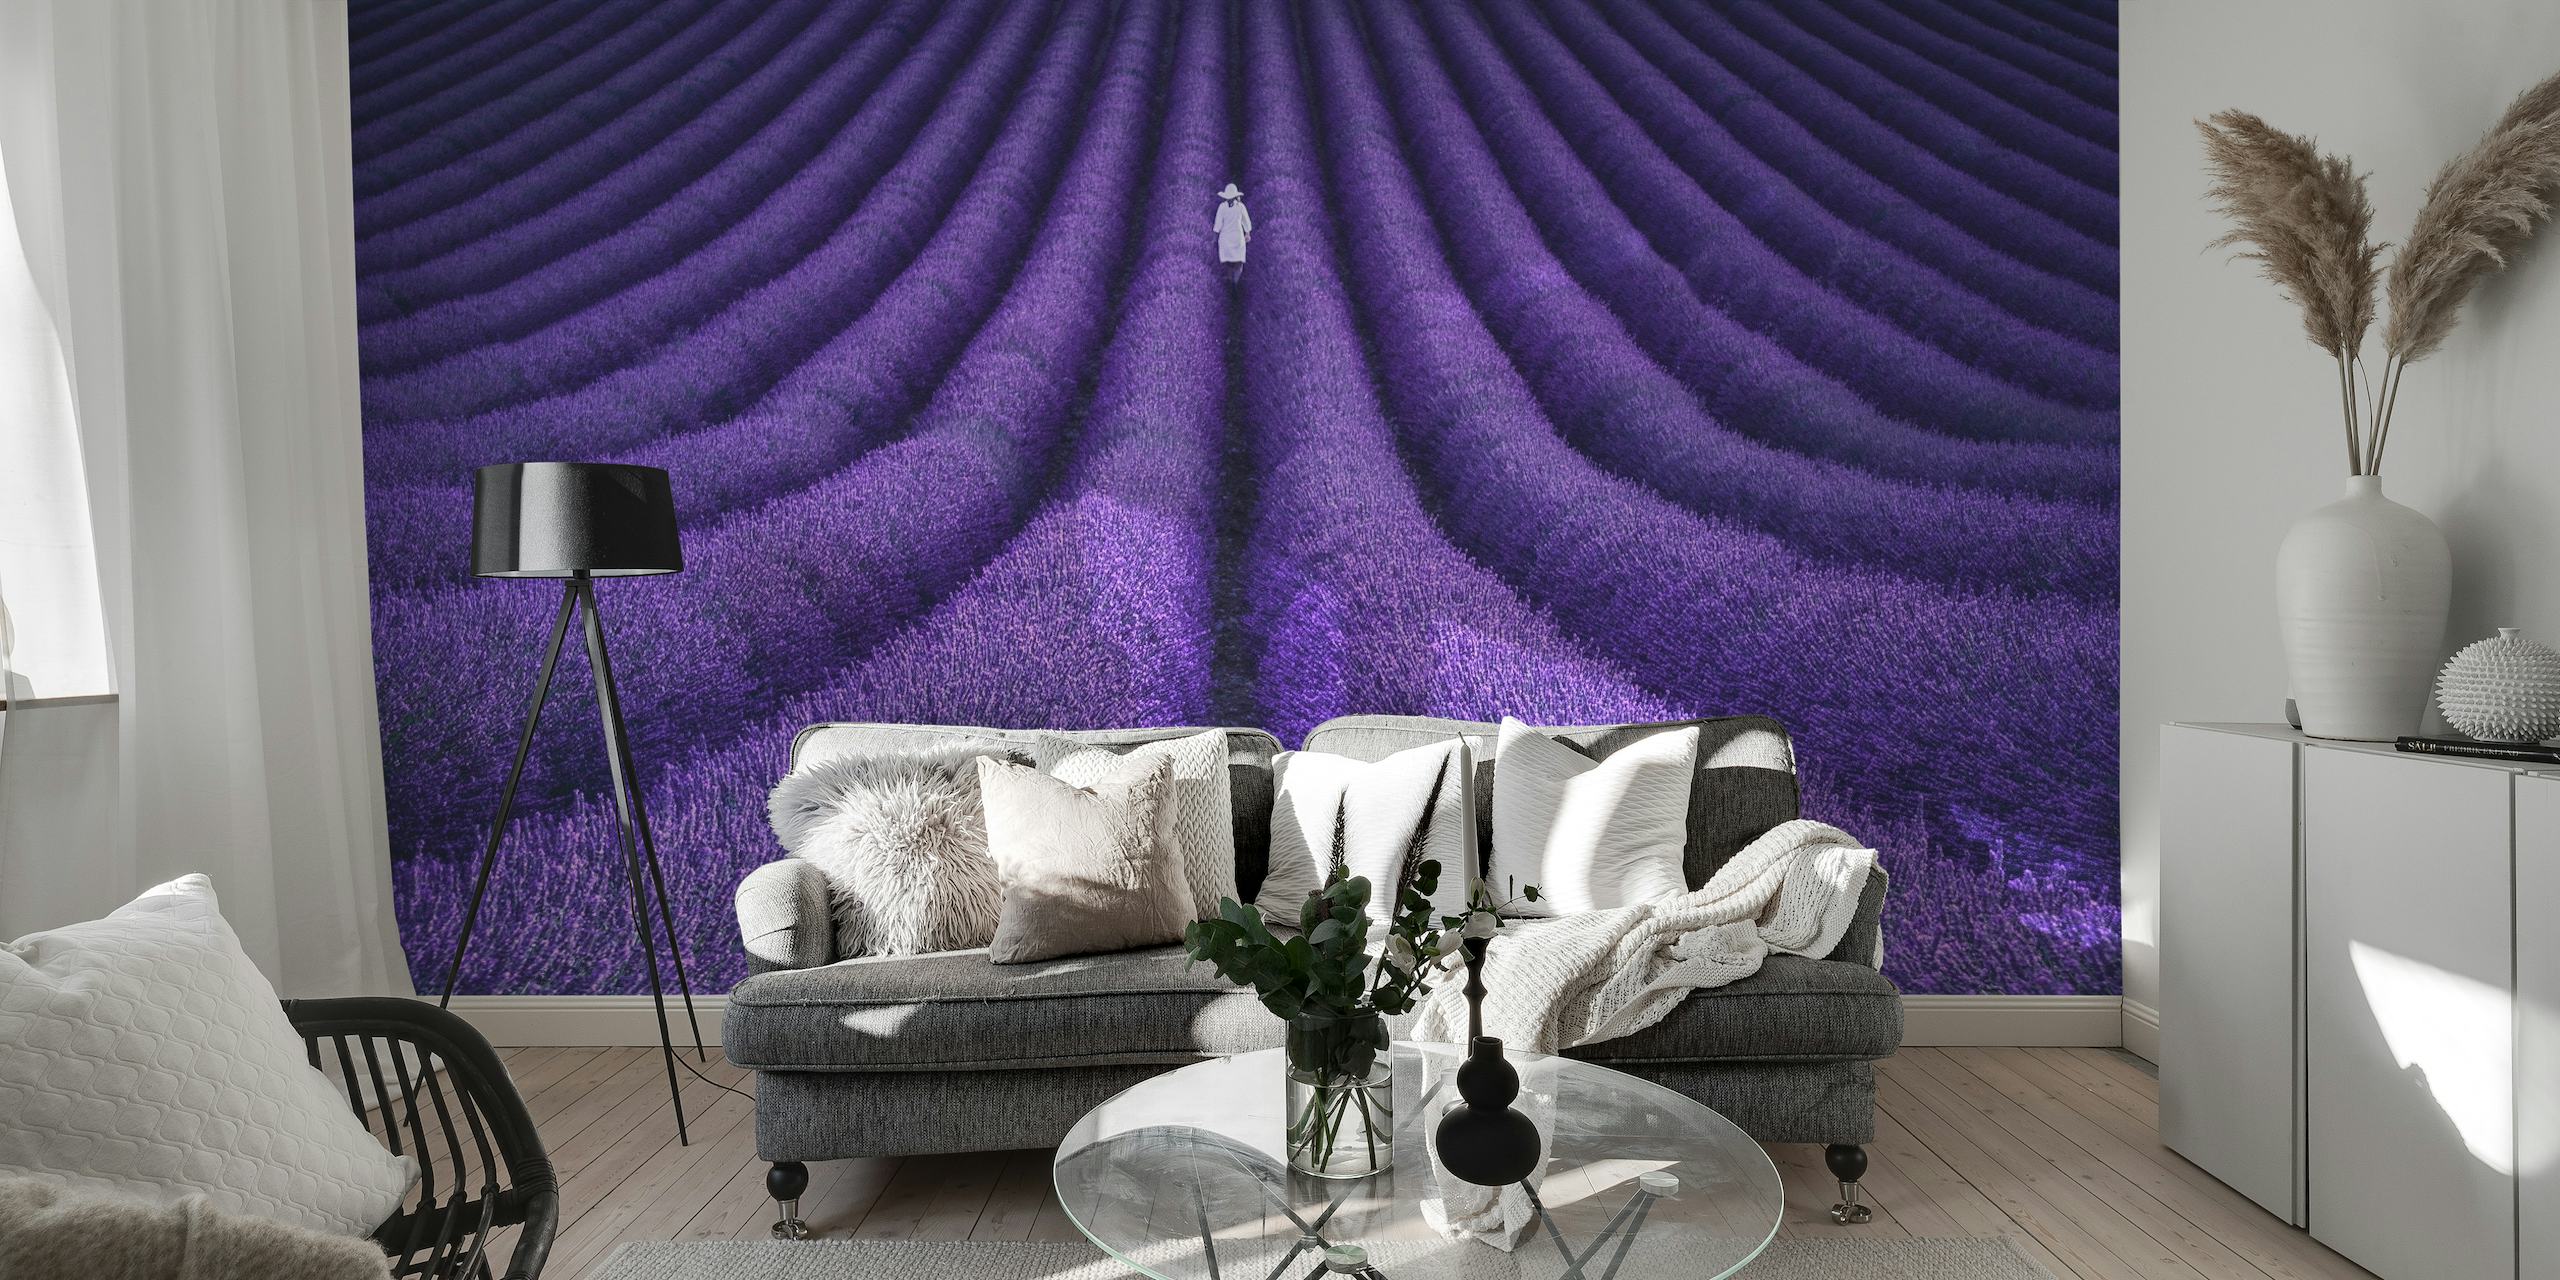 Zidna slika polje polja lavande s usamljenom figurom